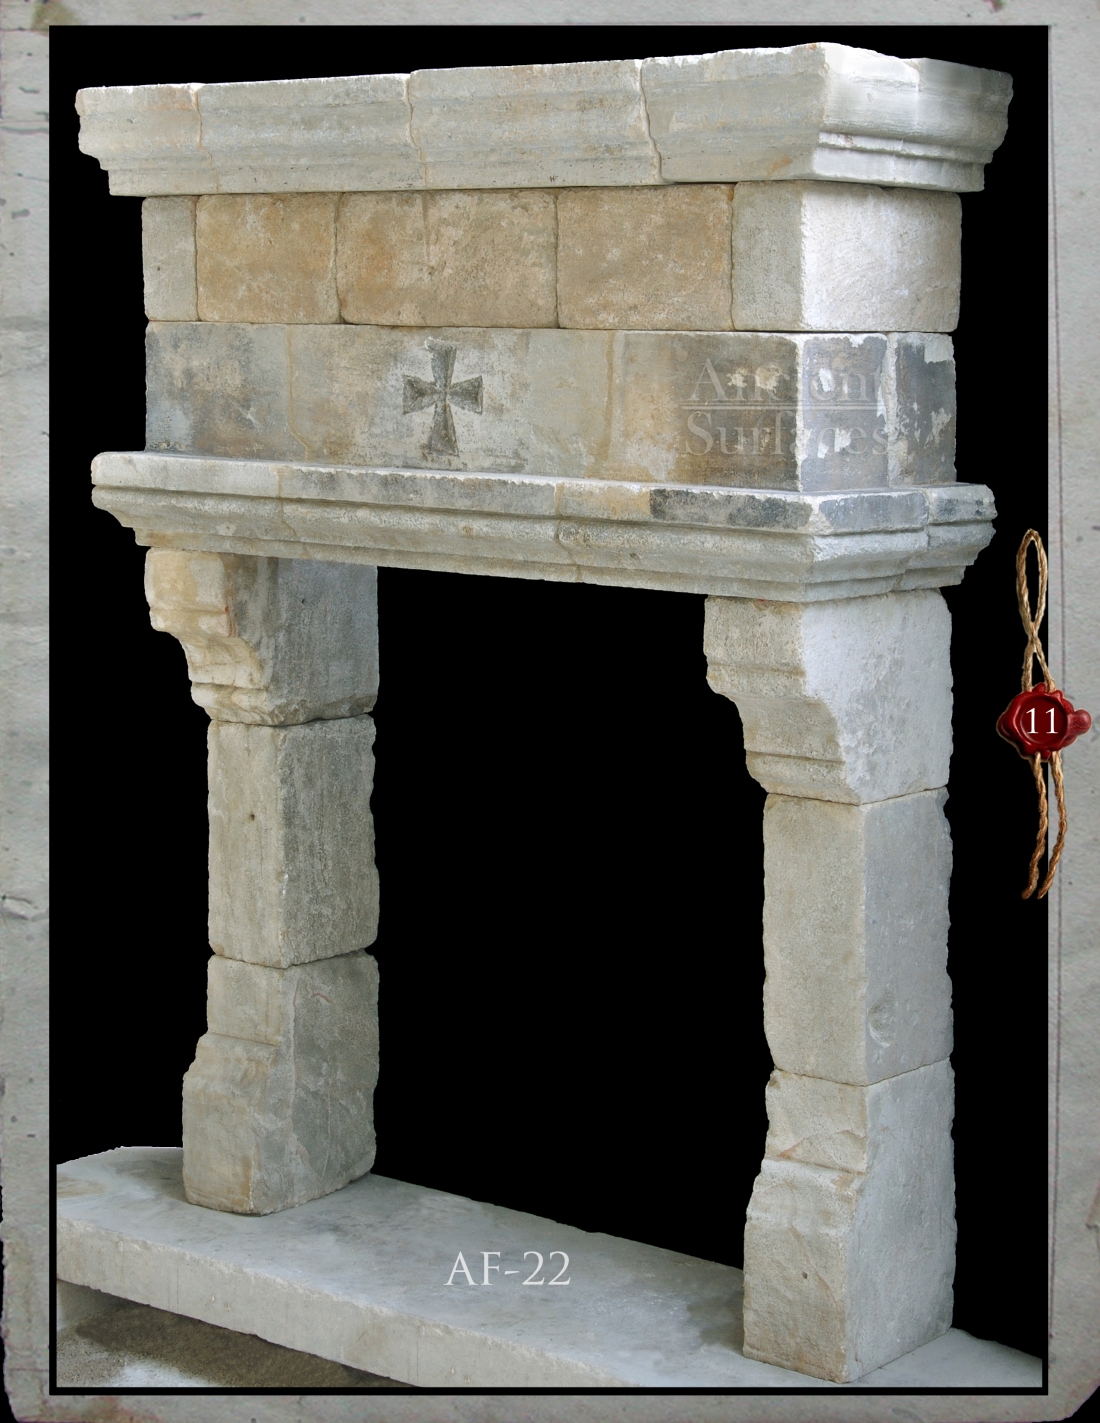 Antique Limestone Fireplace Circa 14th century